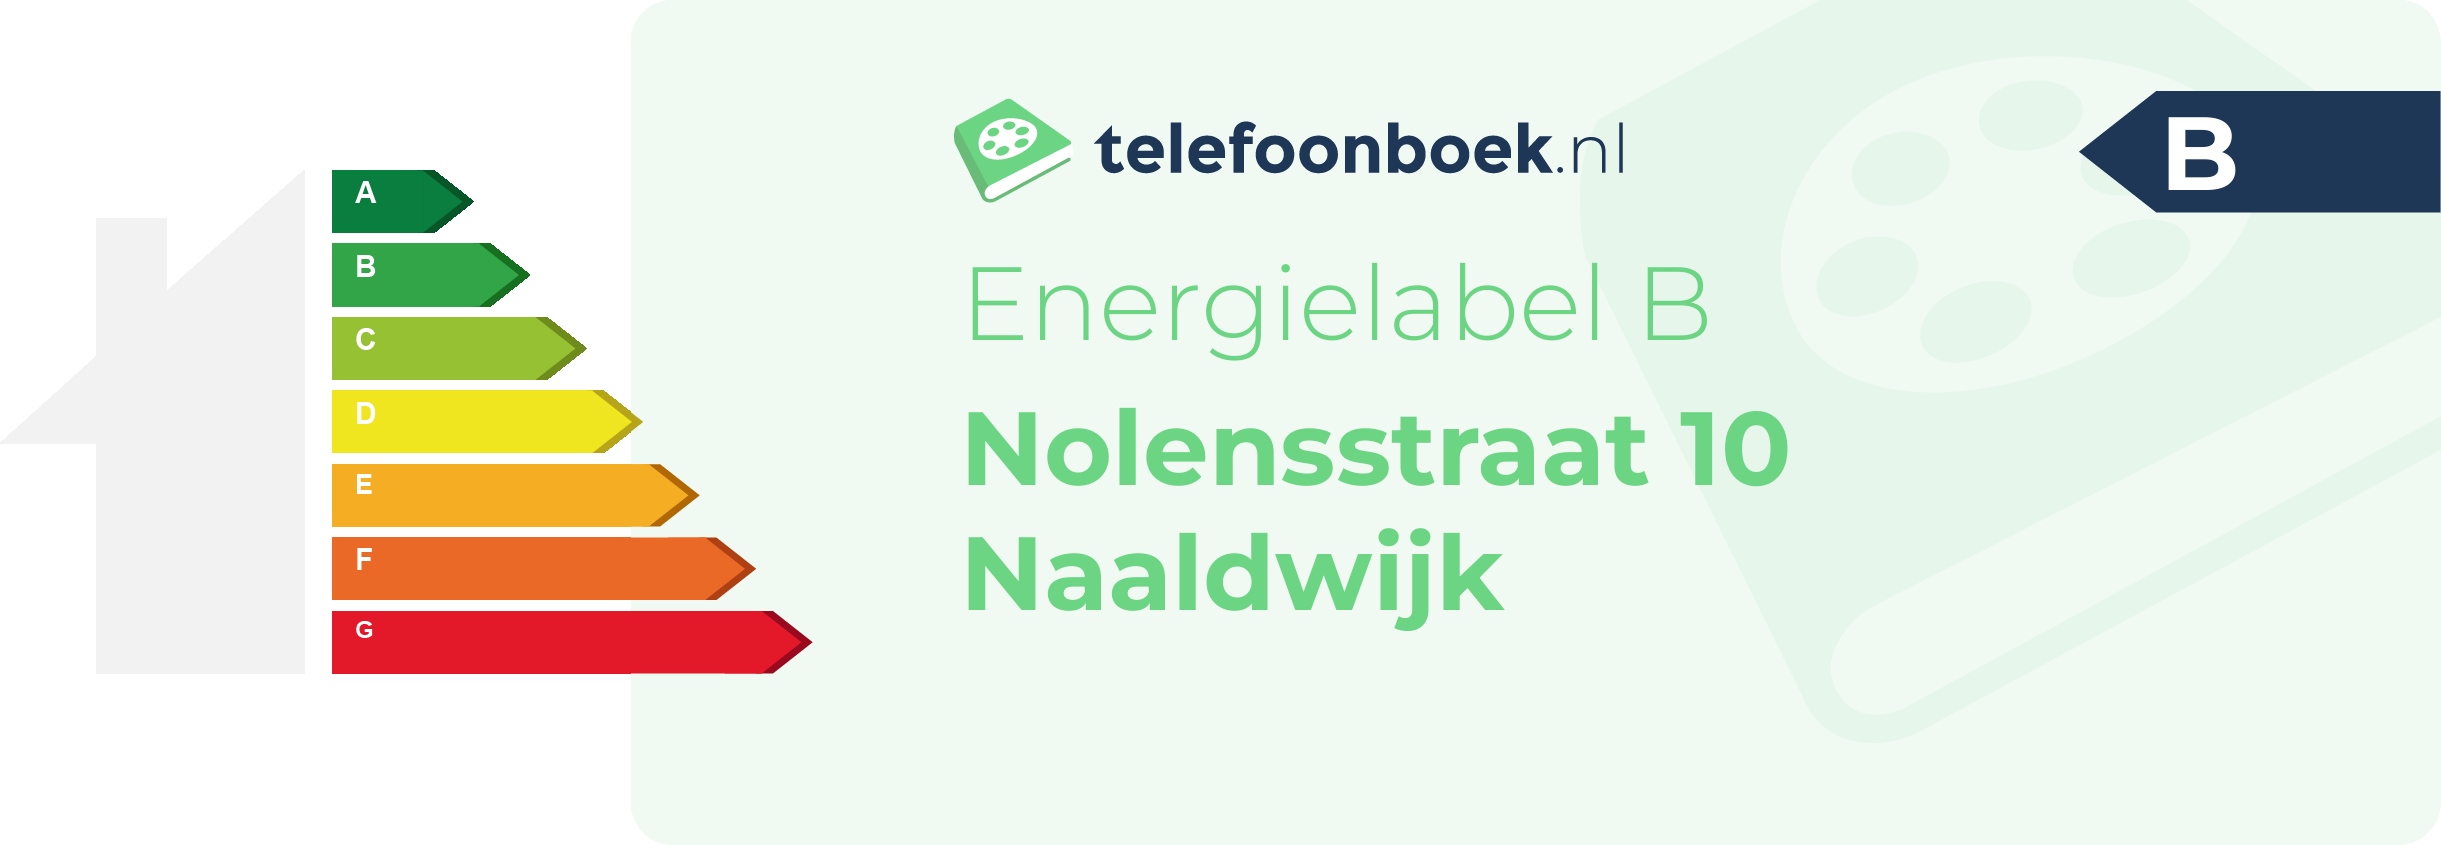 Energielabel Nolensstraat 10 Naaldwijk